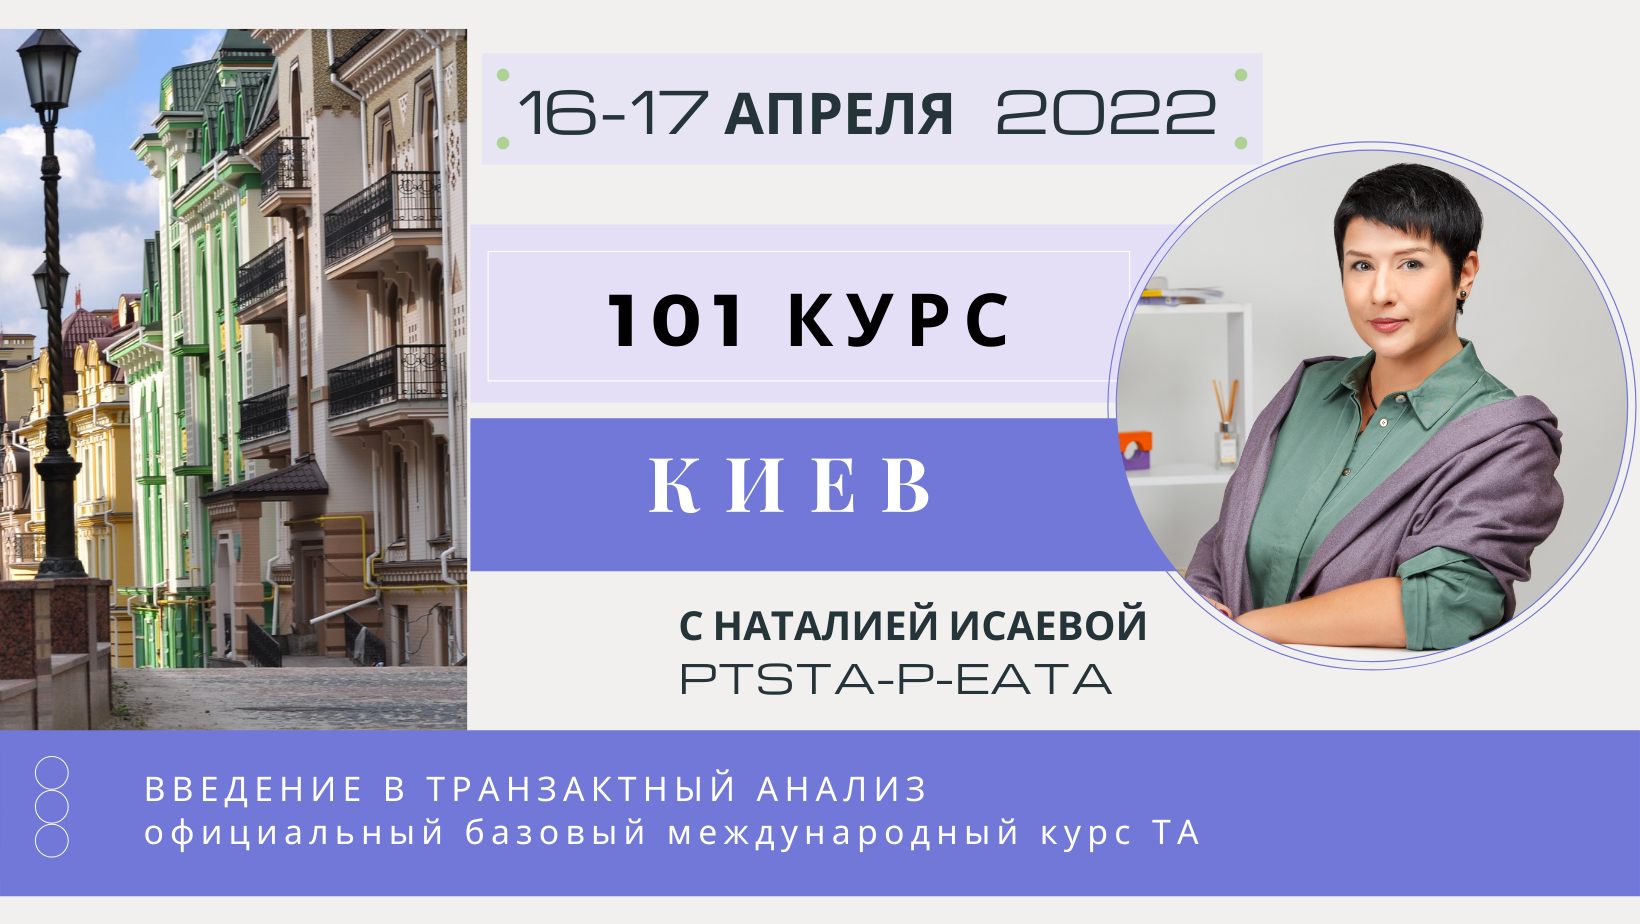 Базовый курс 101 ТРАНЗАКТНОГО АНАЛИЗА с Наталией Исаевой, PTSTA-P-EATA / Старт 16.04.2022